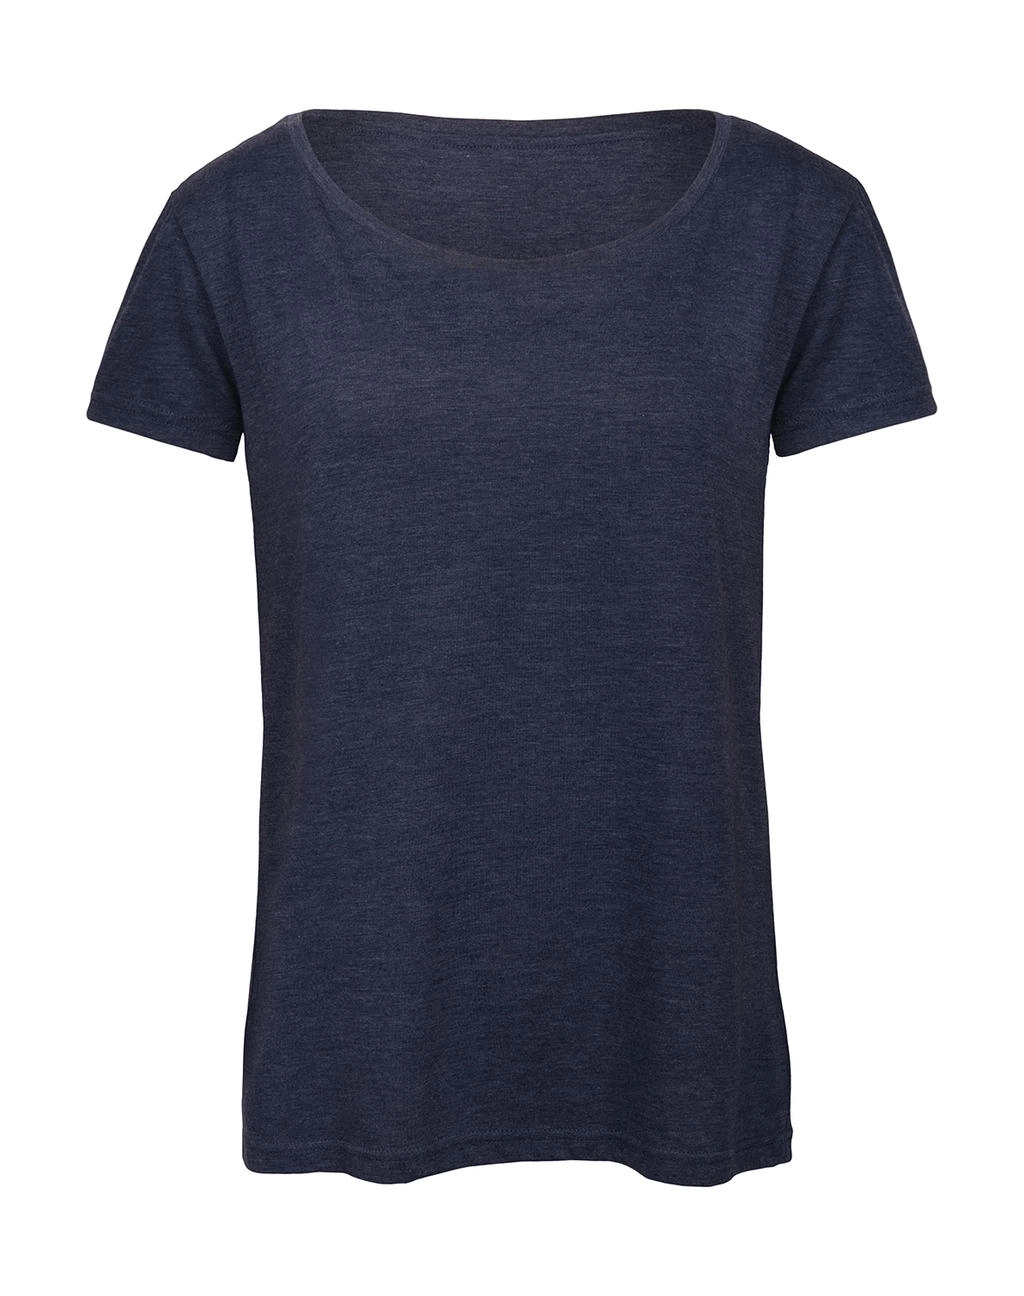 Triblend/women T-Shirt zum Besticken und Bedrucken in der Farbe Heather Navy mit Ihren Logo, Schriftzug oder Motiv.